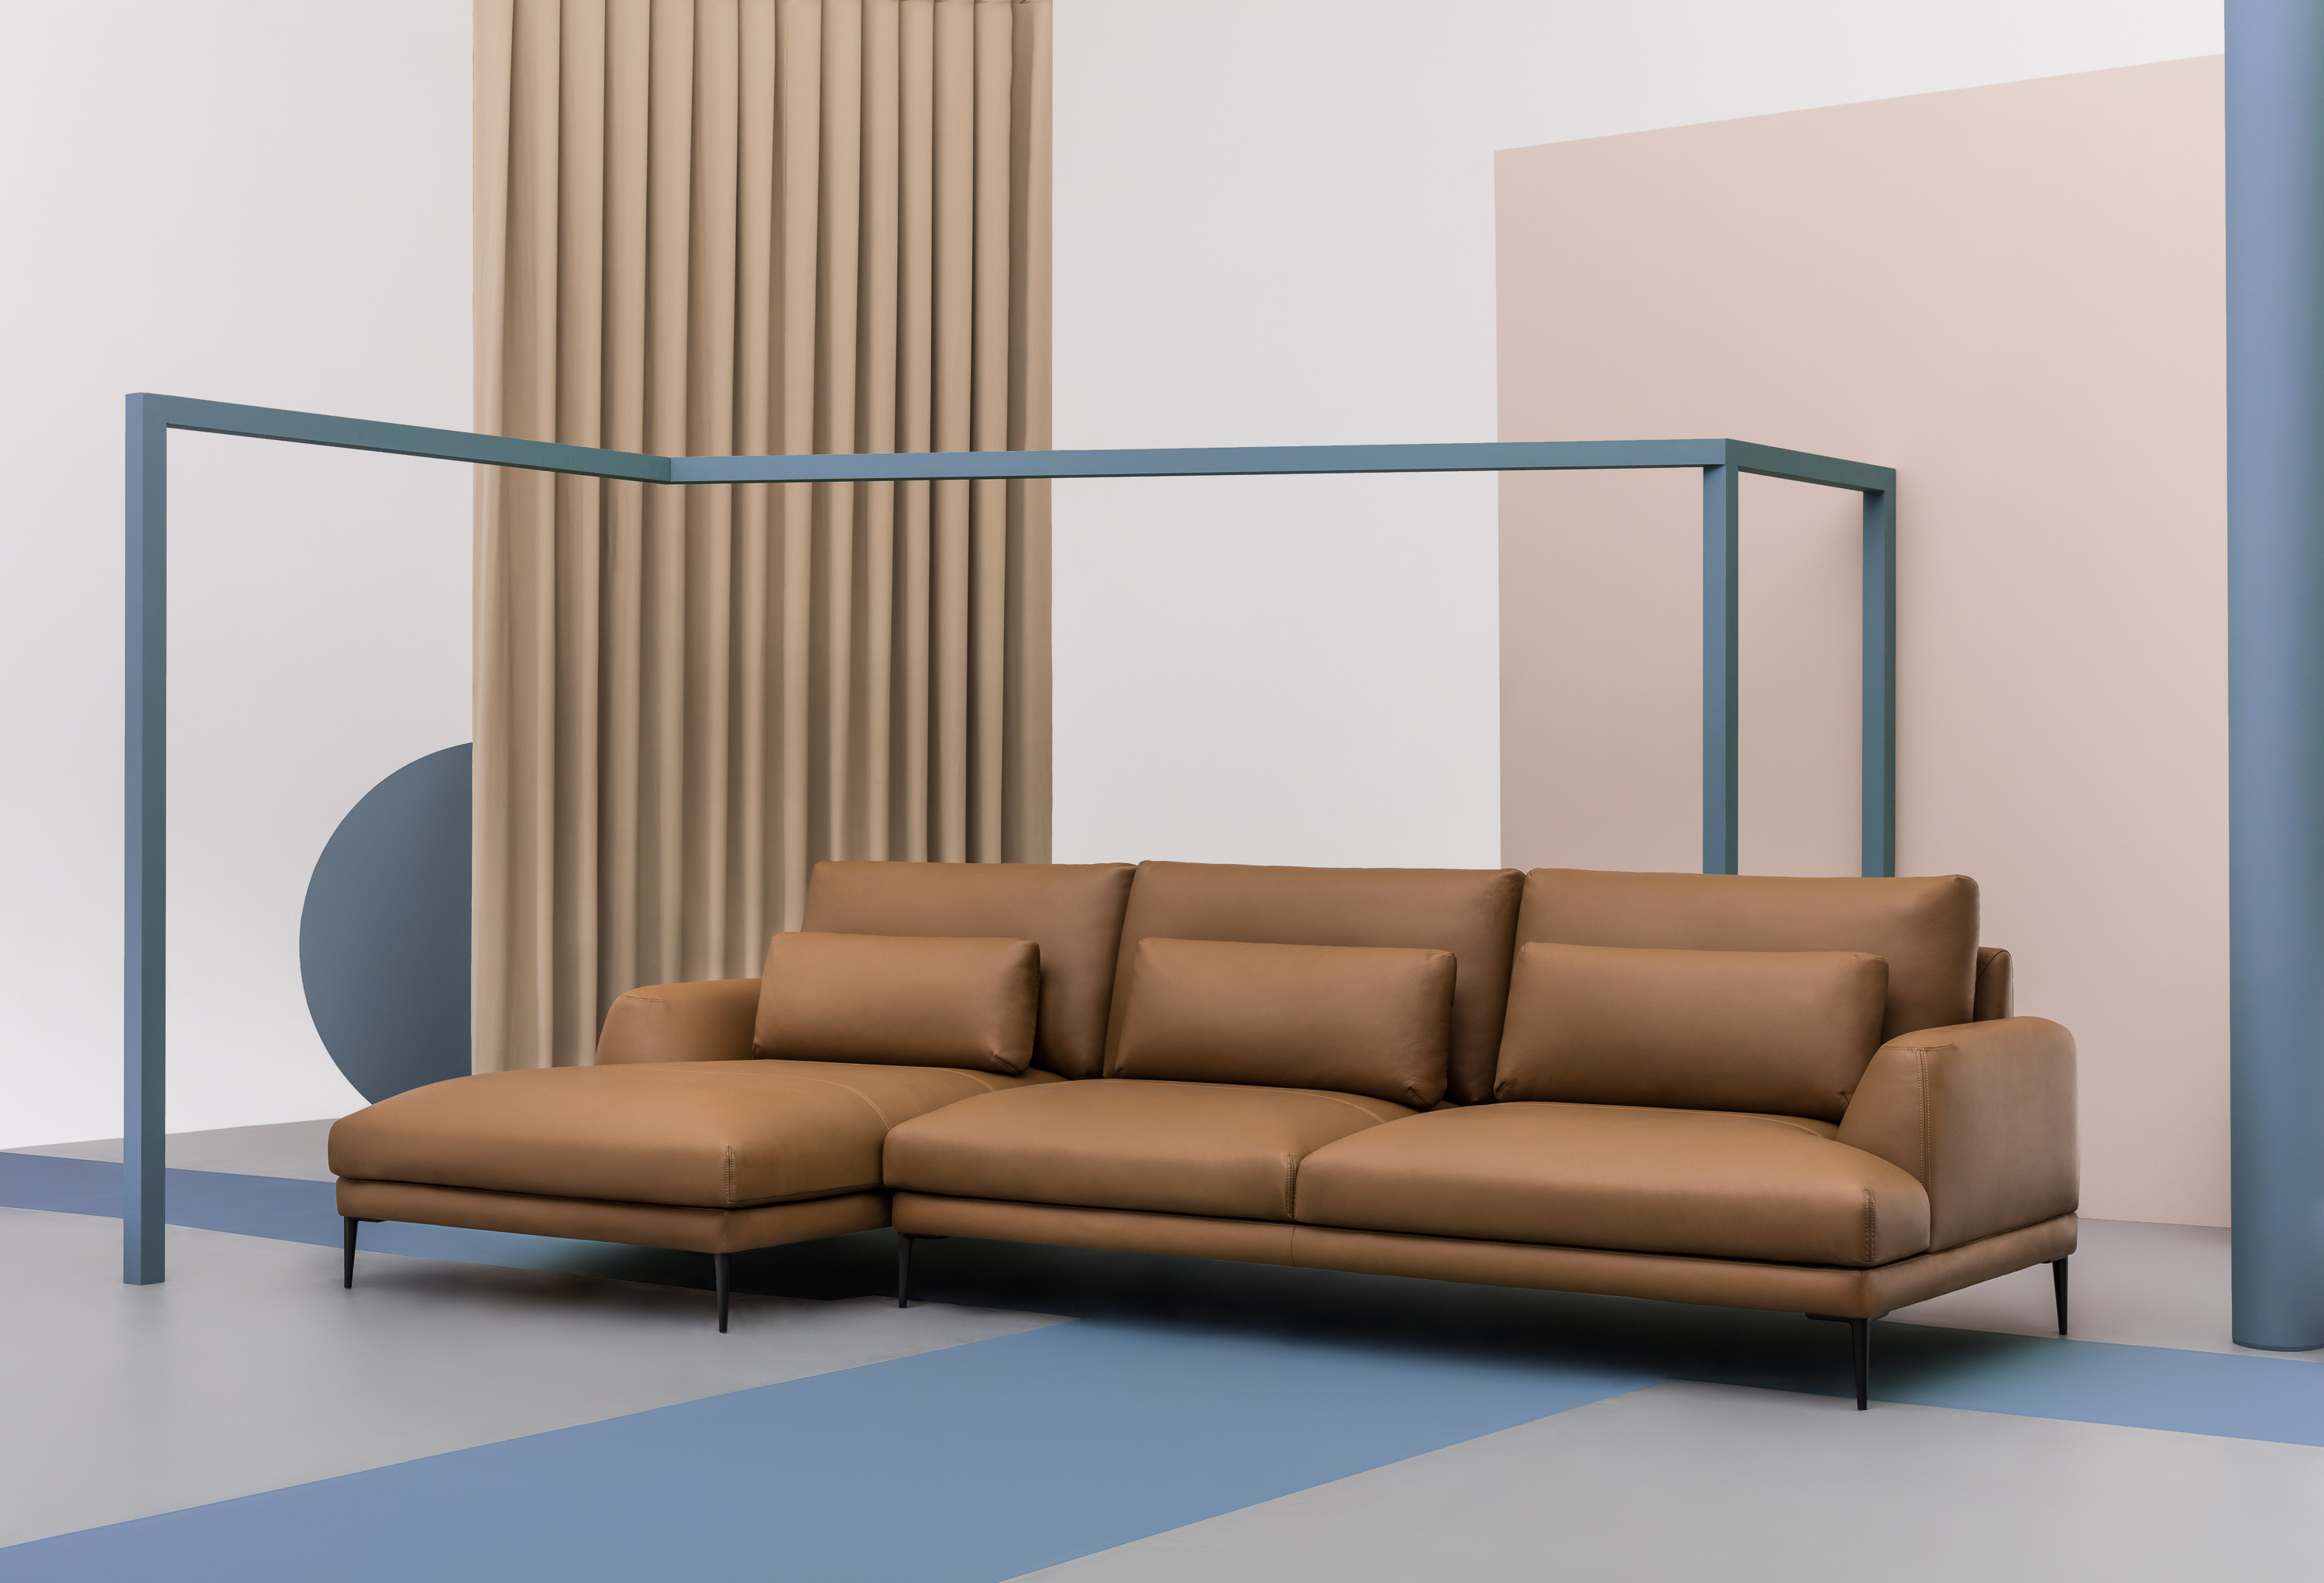 Sofa Classic – obecnie najczęściej wybierana przez klientów Comforty sofa, z rozwiniętym szeregiem modułów i dwóch głębokościach siedzisk, po raz pierwszy zaprezentowana została w kwietniu w Mediolanie w skórze Elmosoft marki Elmo.